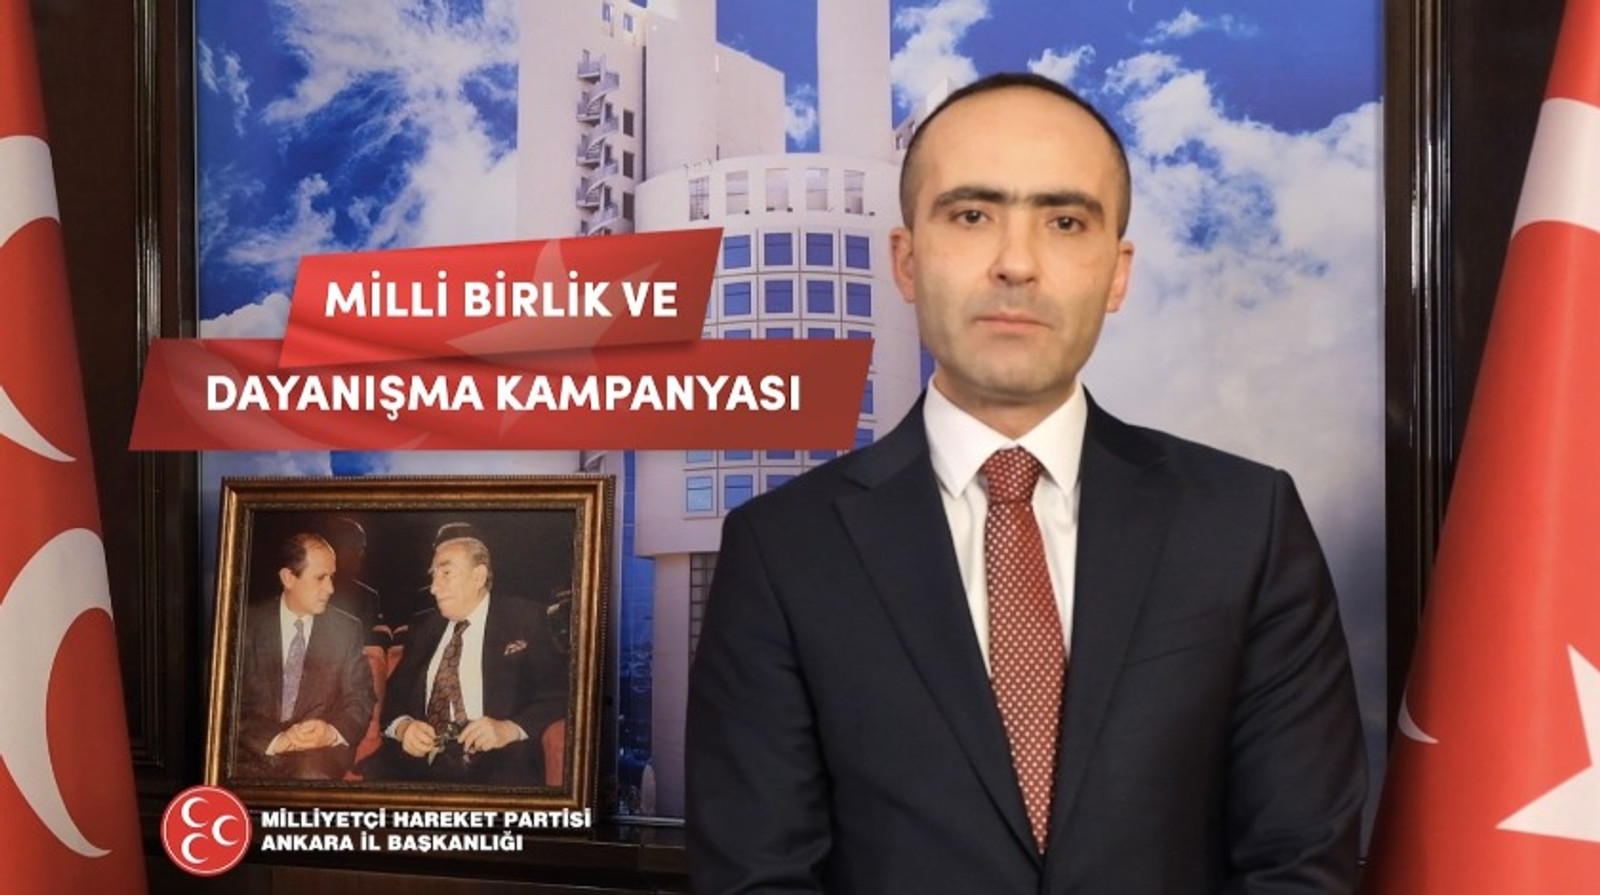 MHP Ankara İl Başkanlığından Milli Birlik ve Dayanışma kampanyası